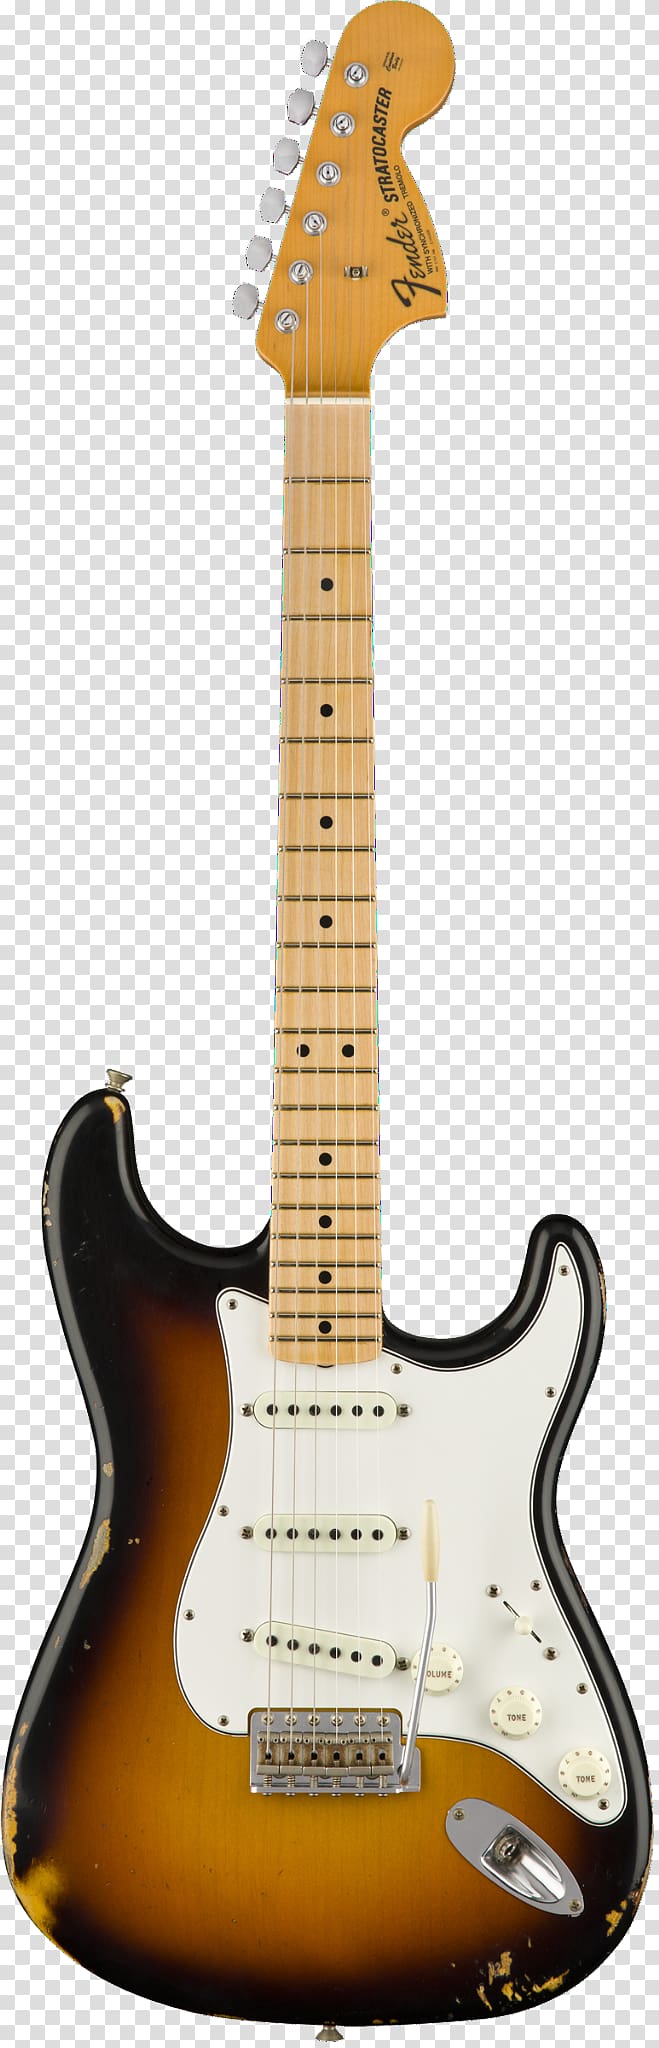 Fender Stratocaster Fender Standard Stratocaster Fender Musical Instruments Corporation Sunburst, Gretsch transparent background PNG clipart